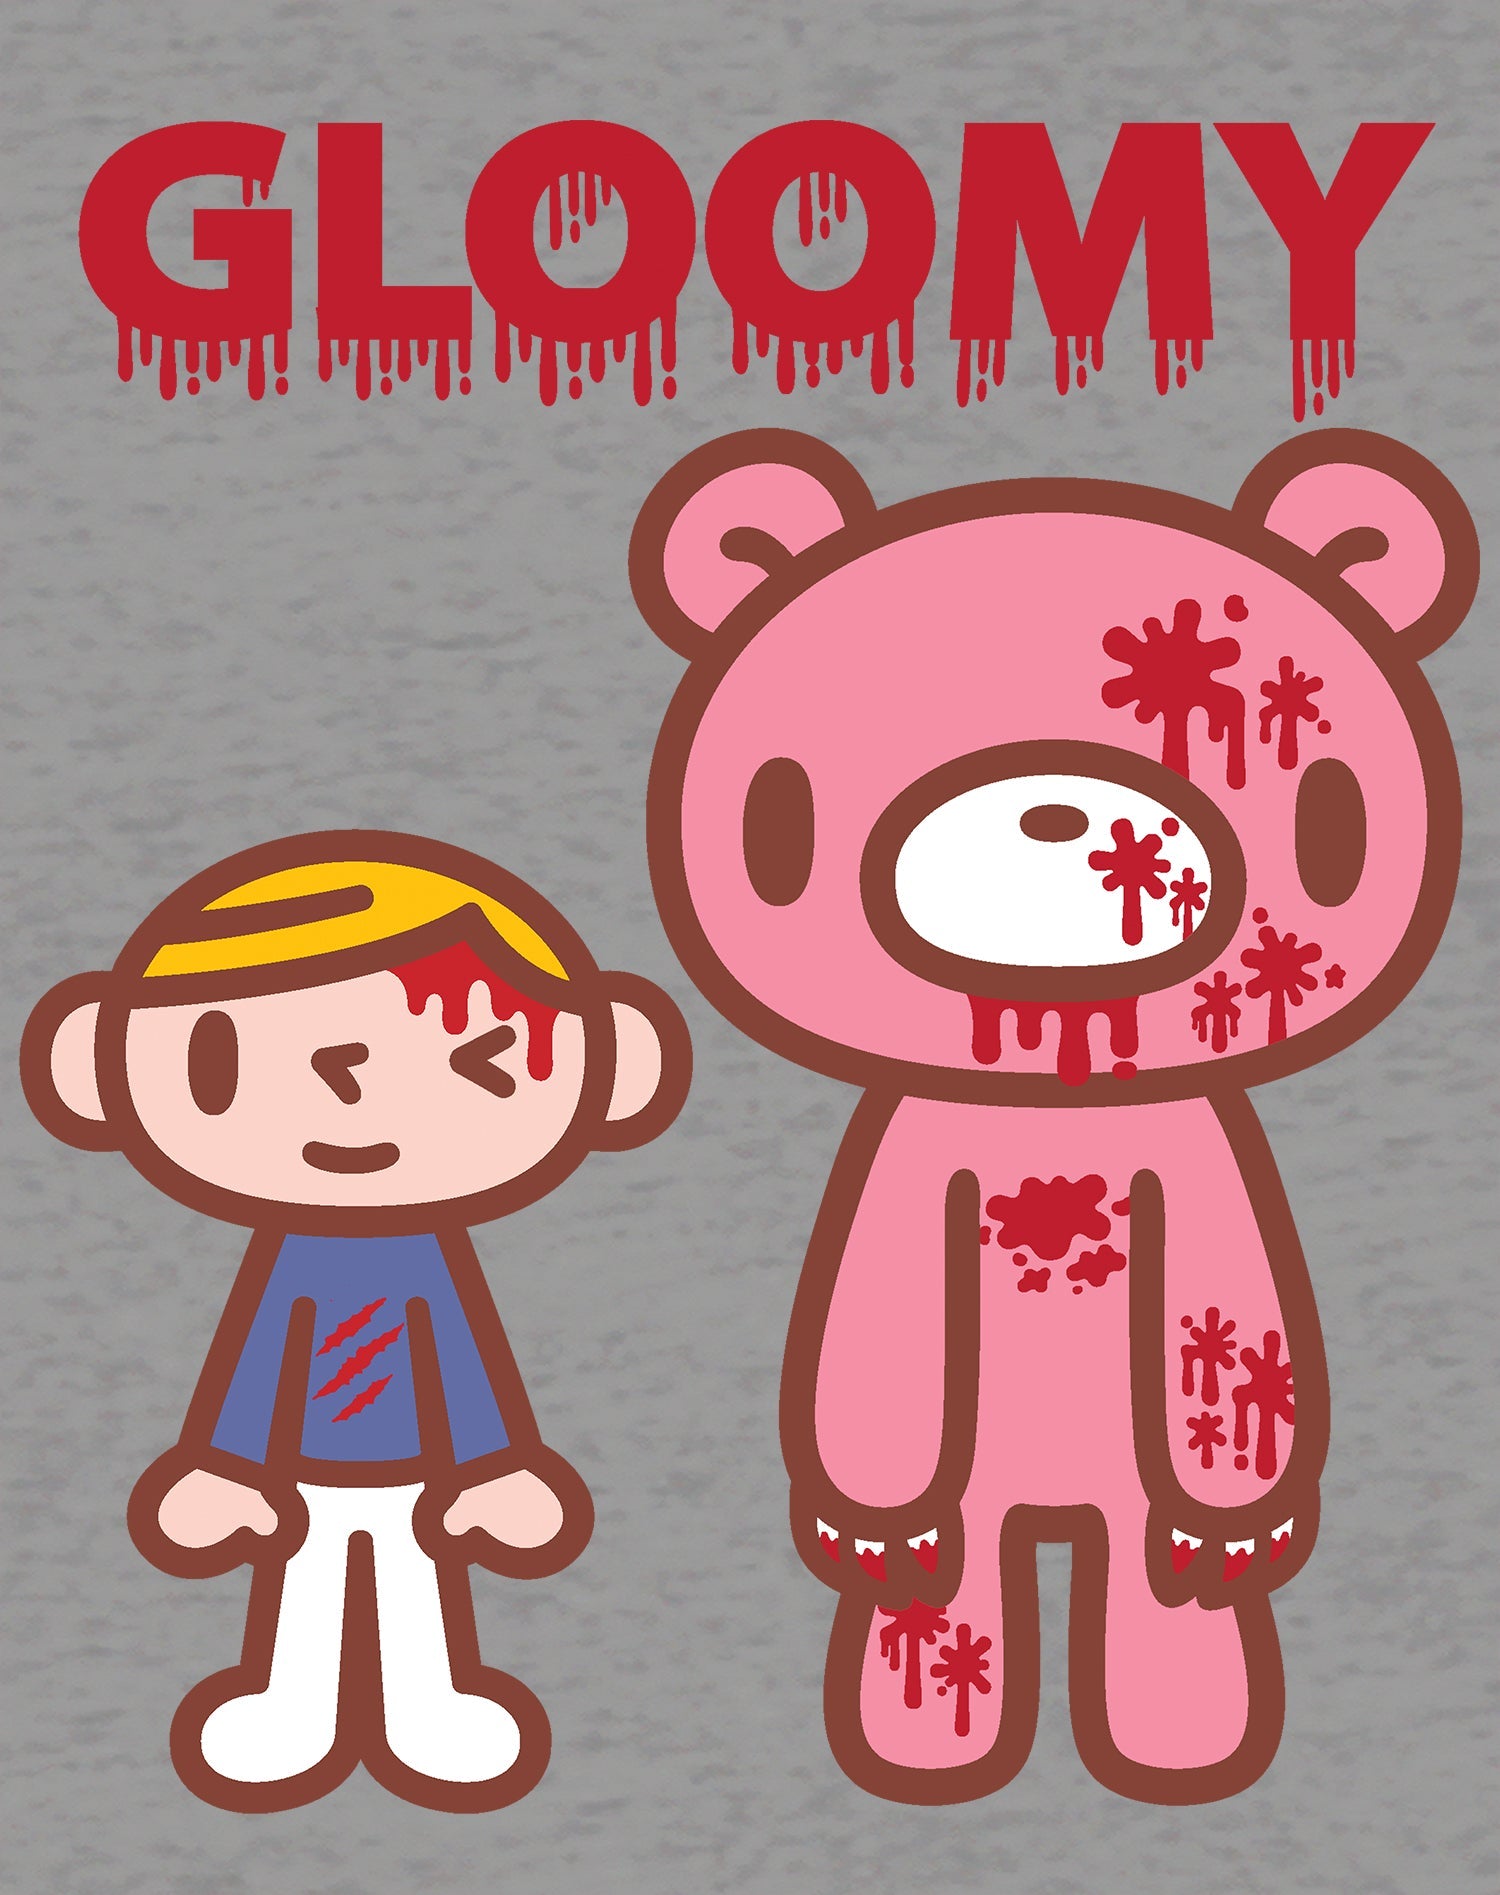 Gloomy Bear Blood Splatter Official Women's T-shirt